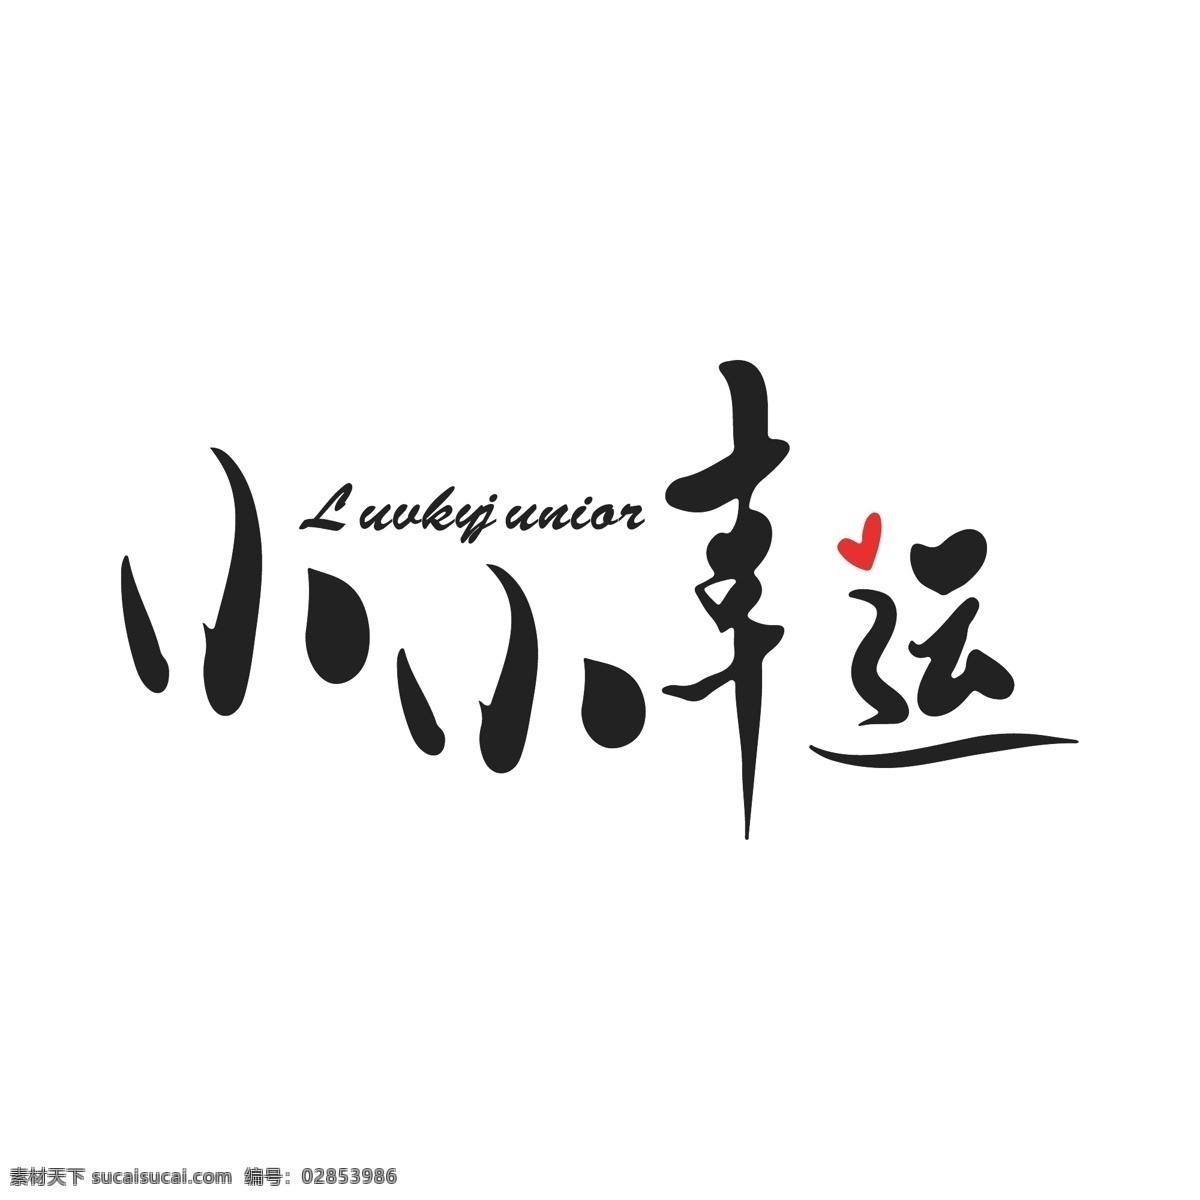 咖啡店 logo 文字logo 字体设计 小幸运 爱心logo 简约时尚 咖啡行业 logo设计 标识 标志 ai矢量